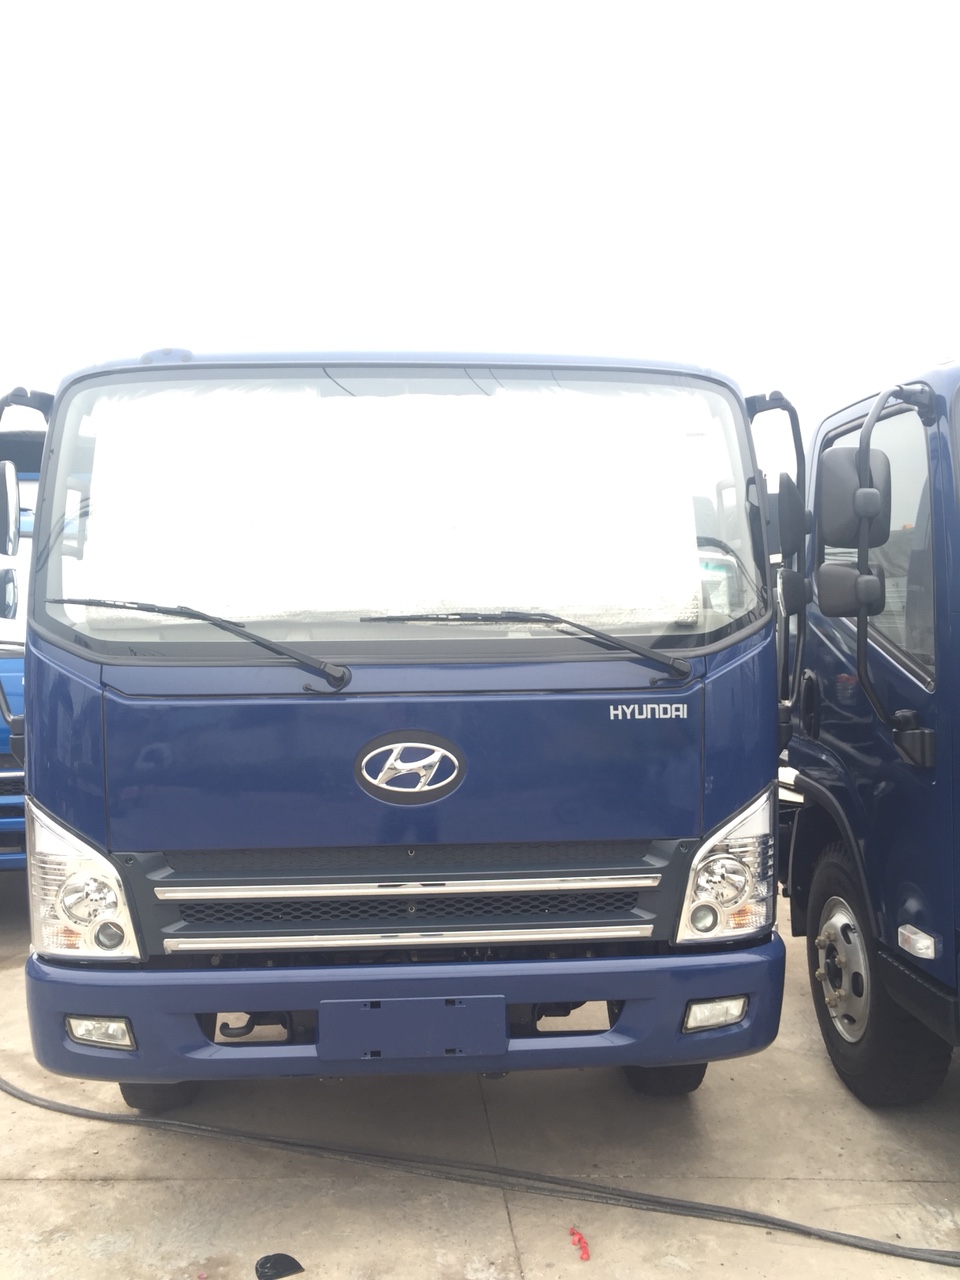 Howo La Dalat 2017 - Xe tải Hyundai 7.3 tấn, Hyundai Faw 7.3 tấn, thùng bạt 6.2m, xe tải 7 tấn, giá tốt